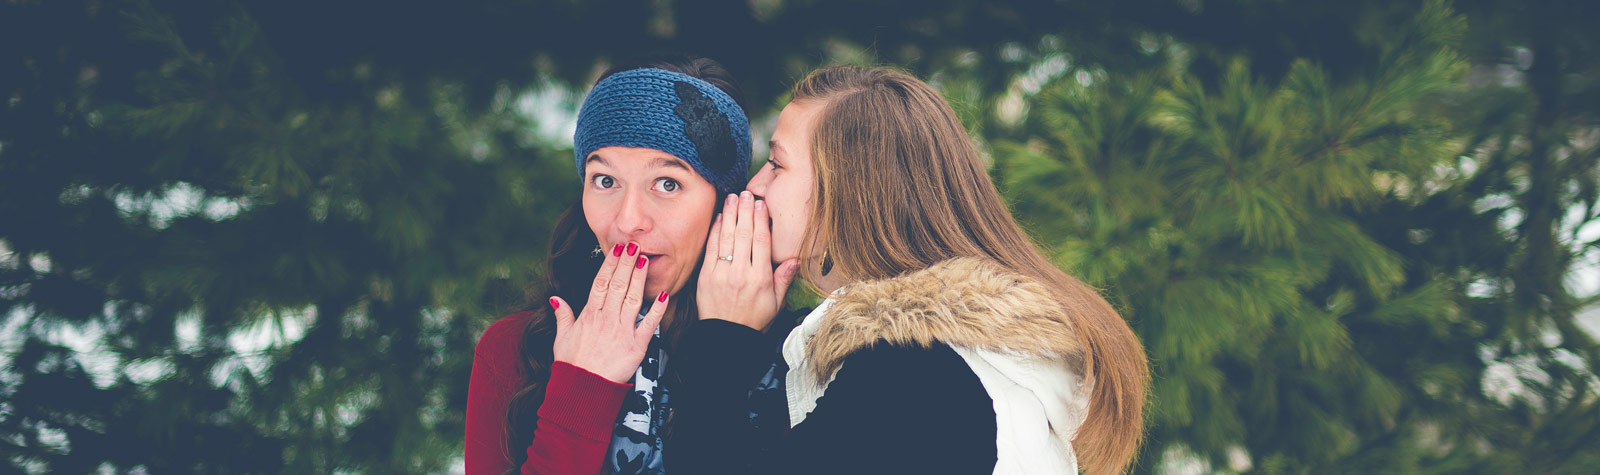 Eine junge Frau schaut gespeilt erschrocken und legt die Hand vor den Mund, während eine andere ihr etwas ins Ohr flüstert